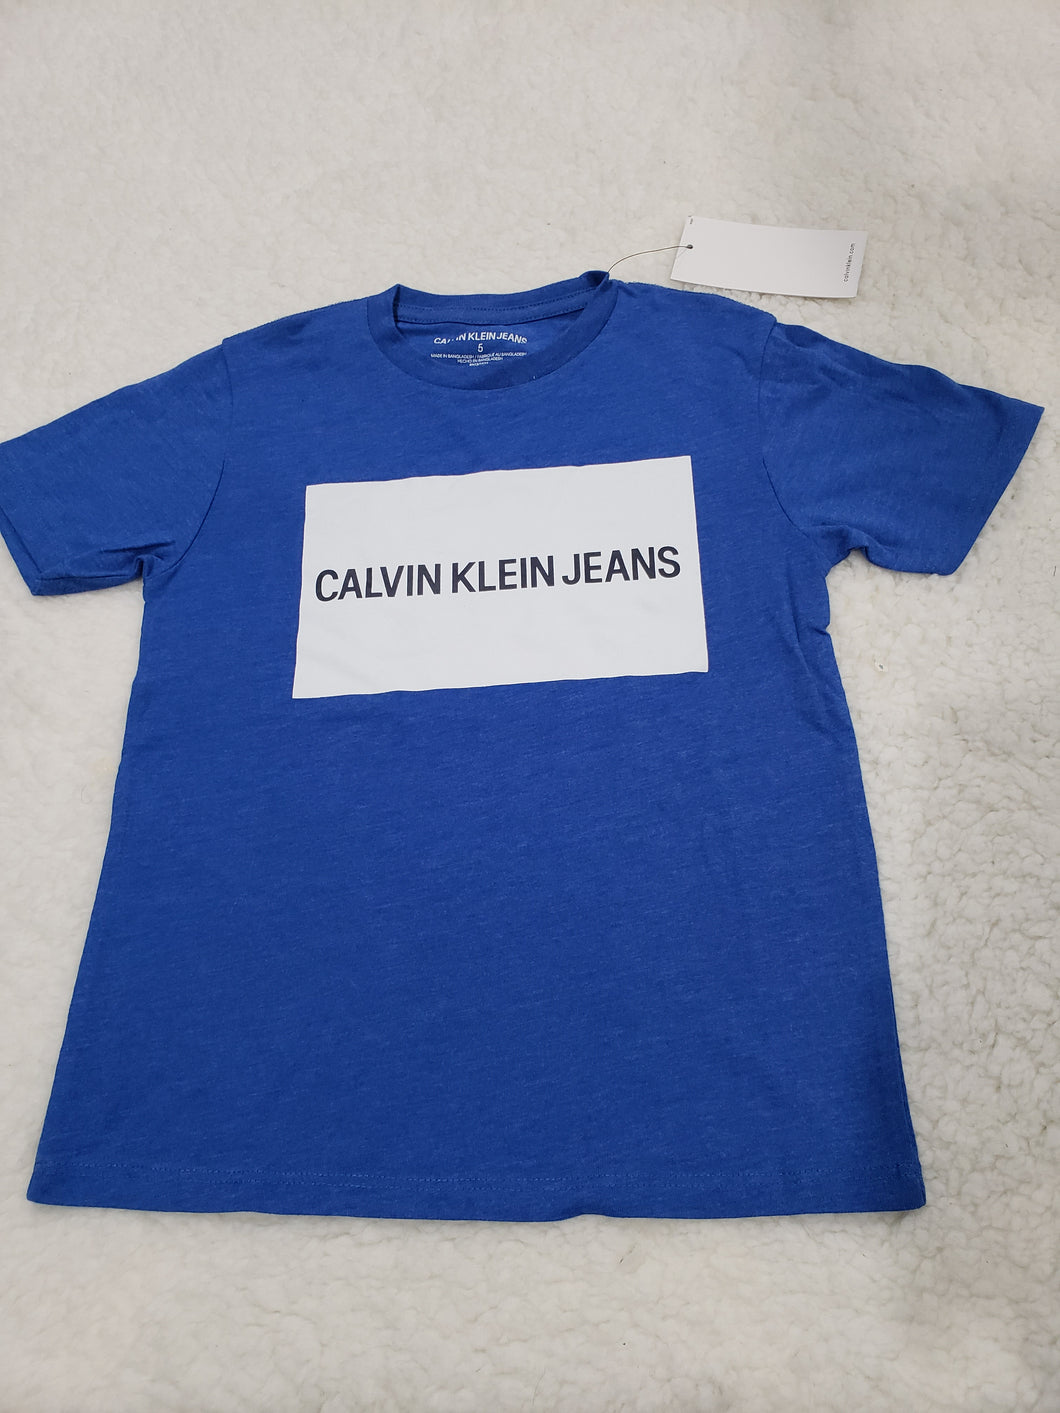 Calvin Klein Boys tshirt 5t Blue